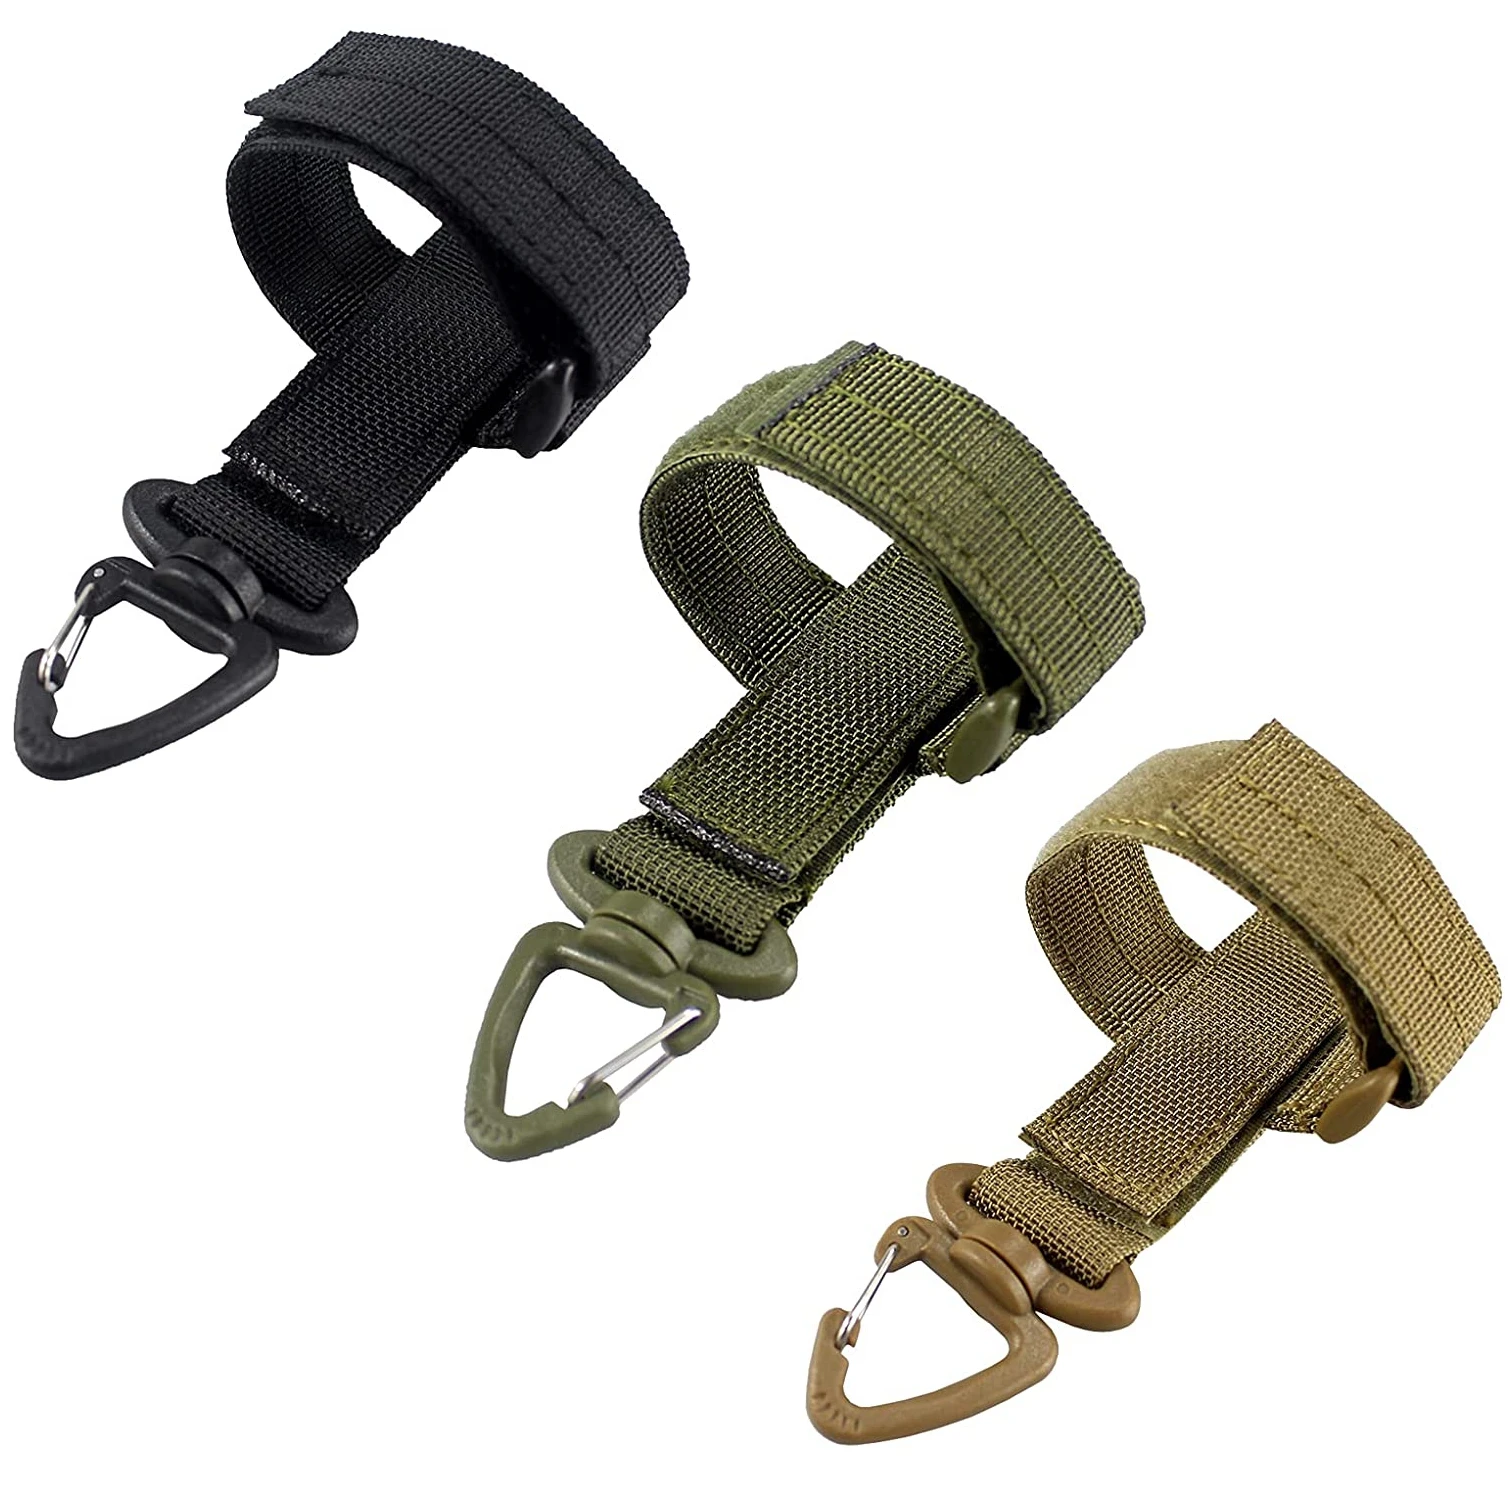 Details about   Nylon Tactical Molle Belt Carabiner Key Holder Camp Buckle Hook Bag Clip S7B9 